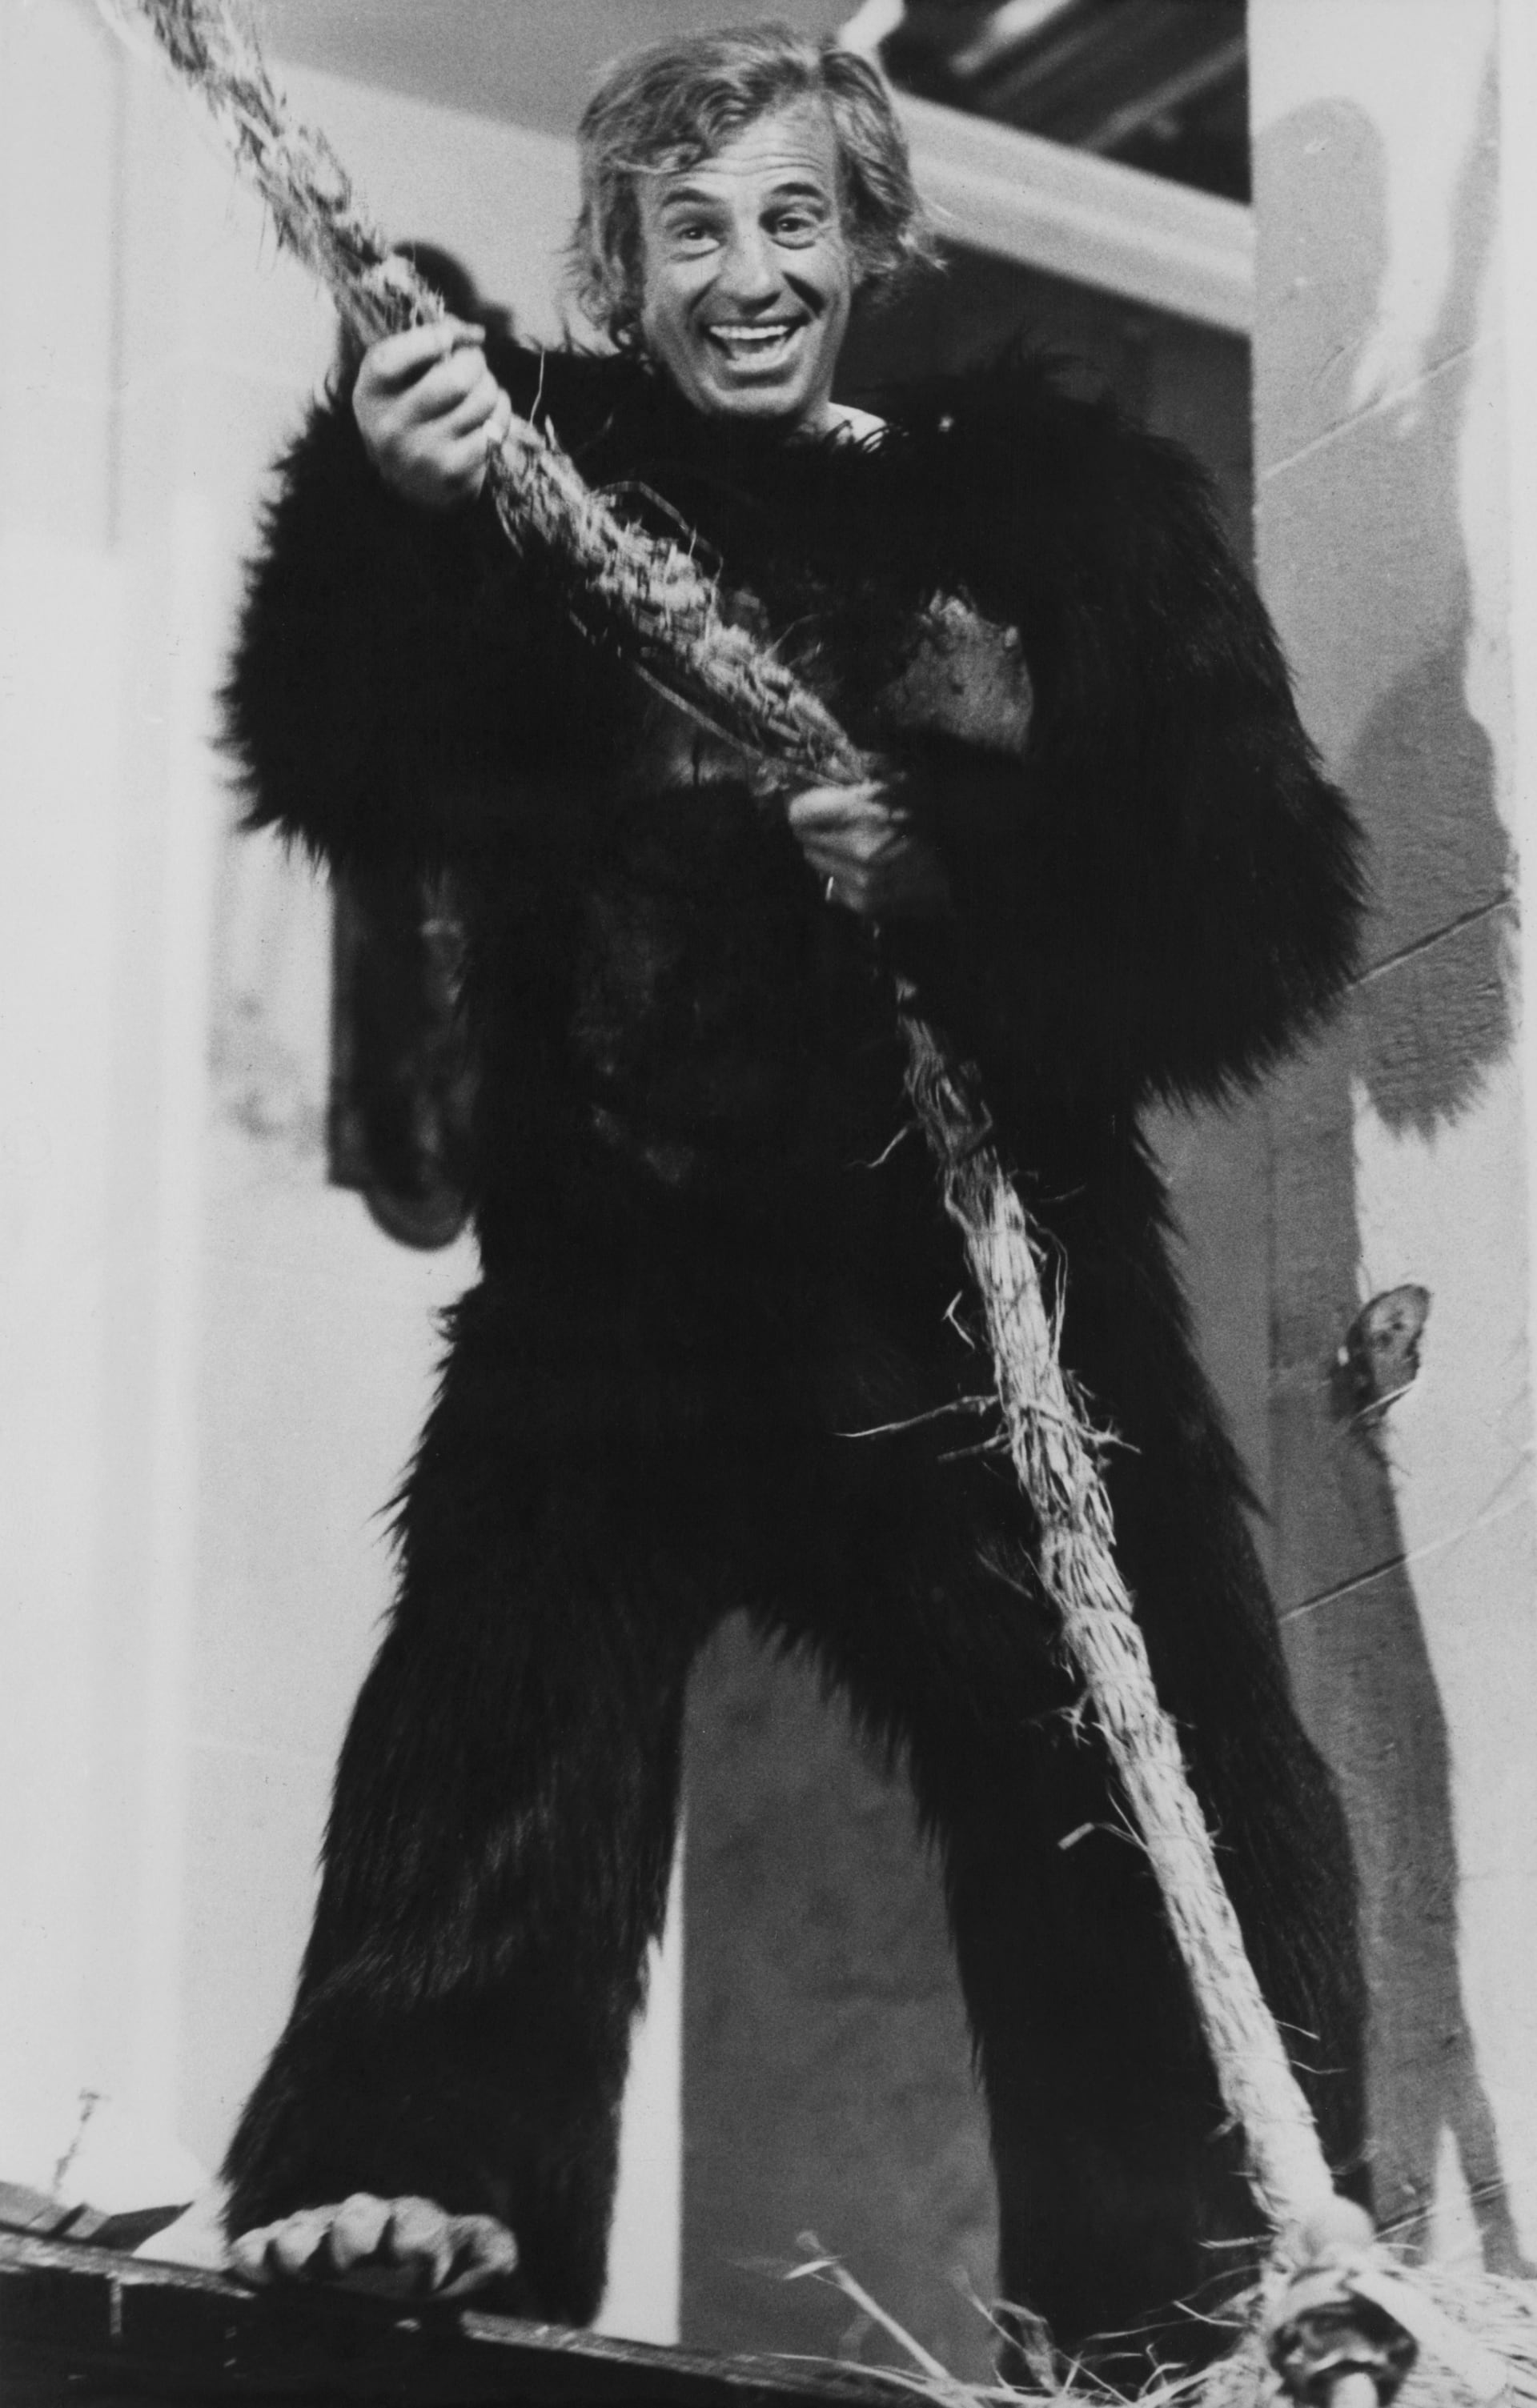 Belmondo ve snímku Zvíře z roku 1977